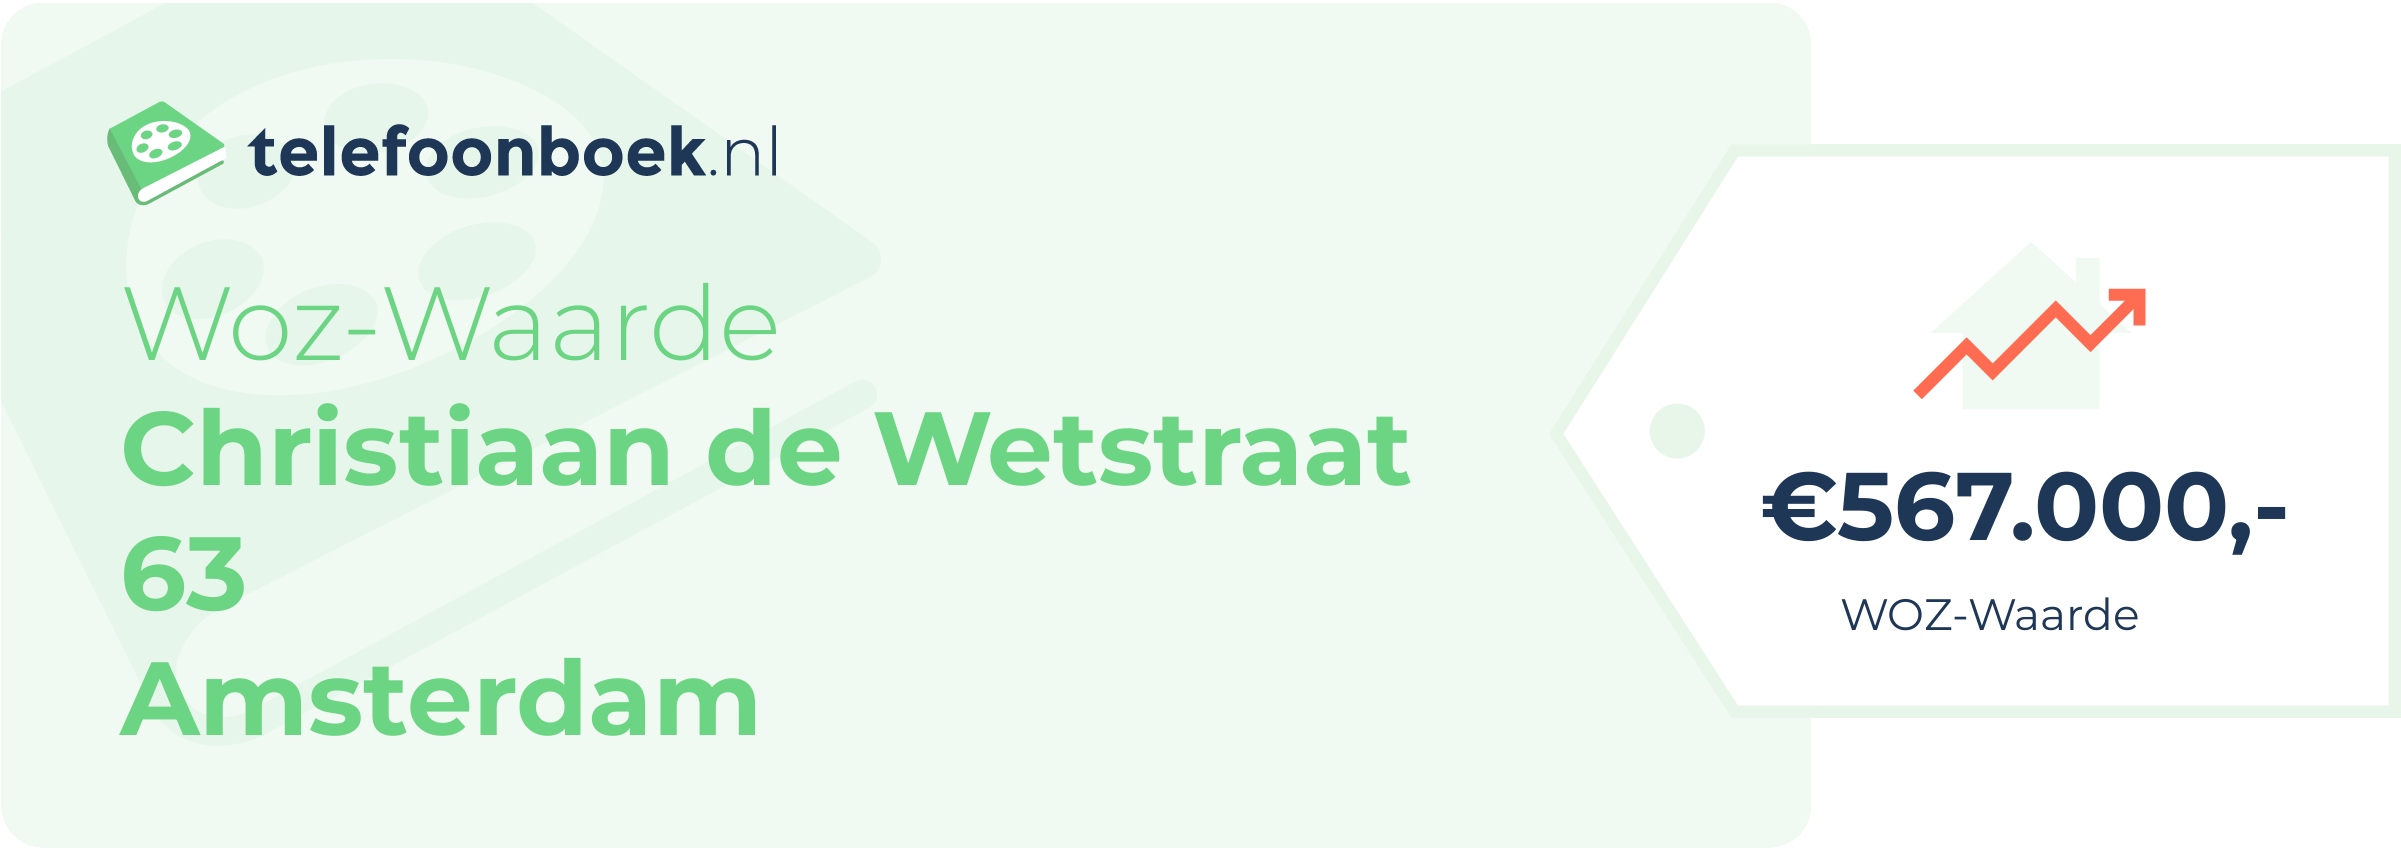 WOZ-waarde Christiaan De Wetstraat 63 Amsterdam